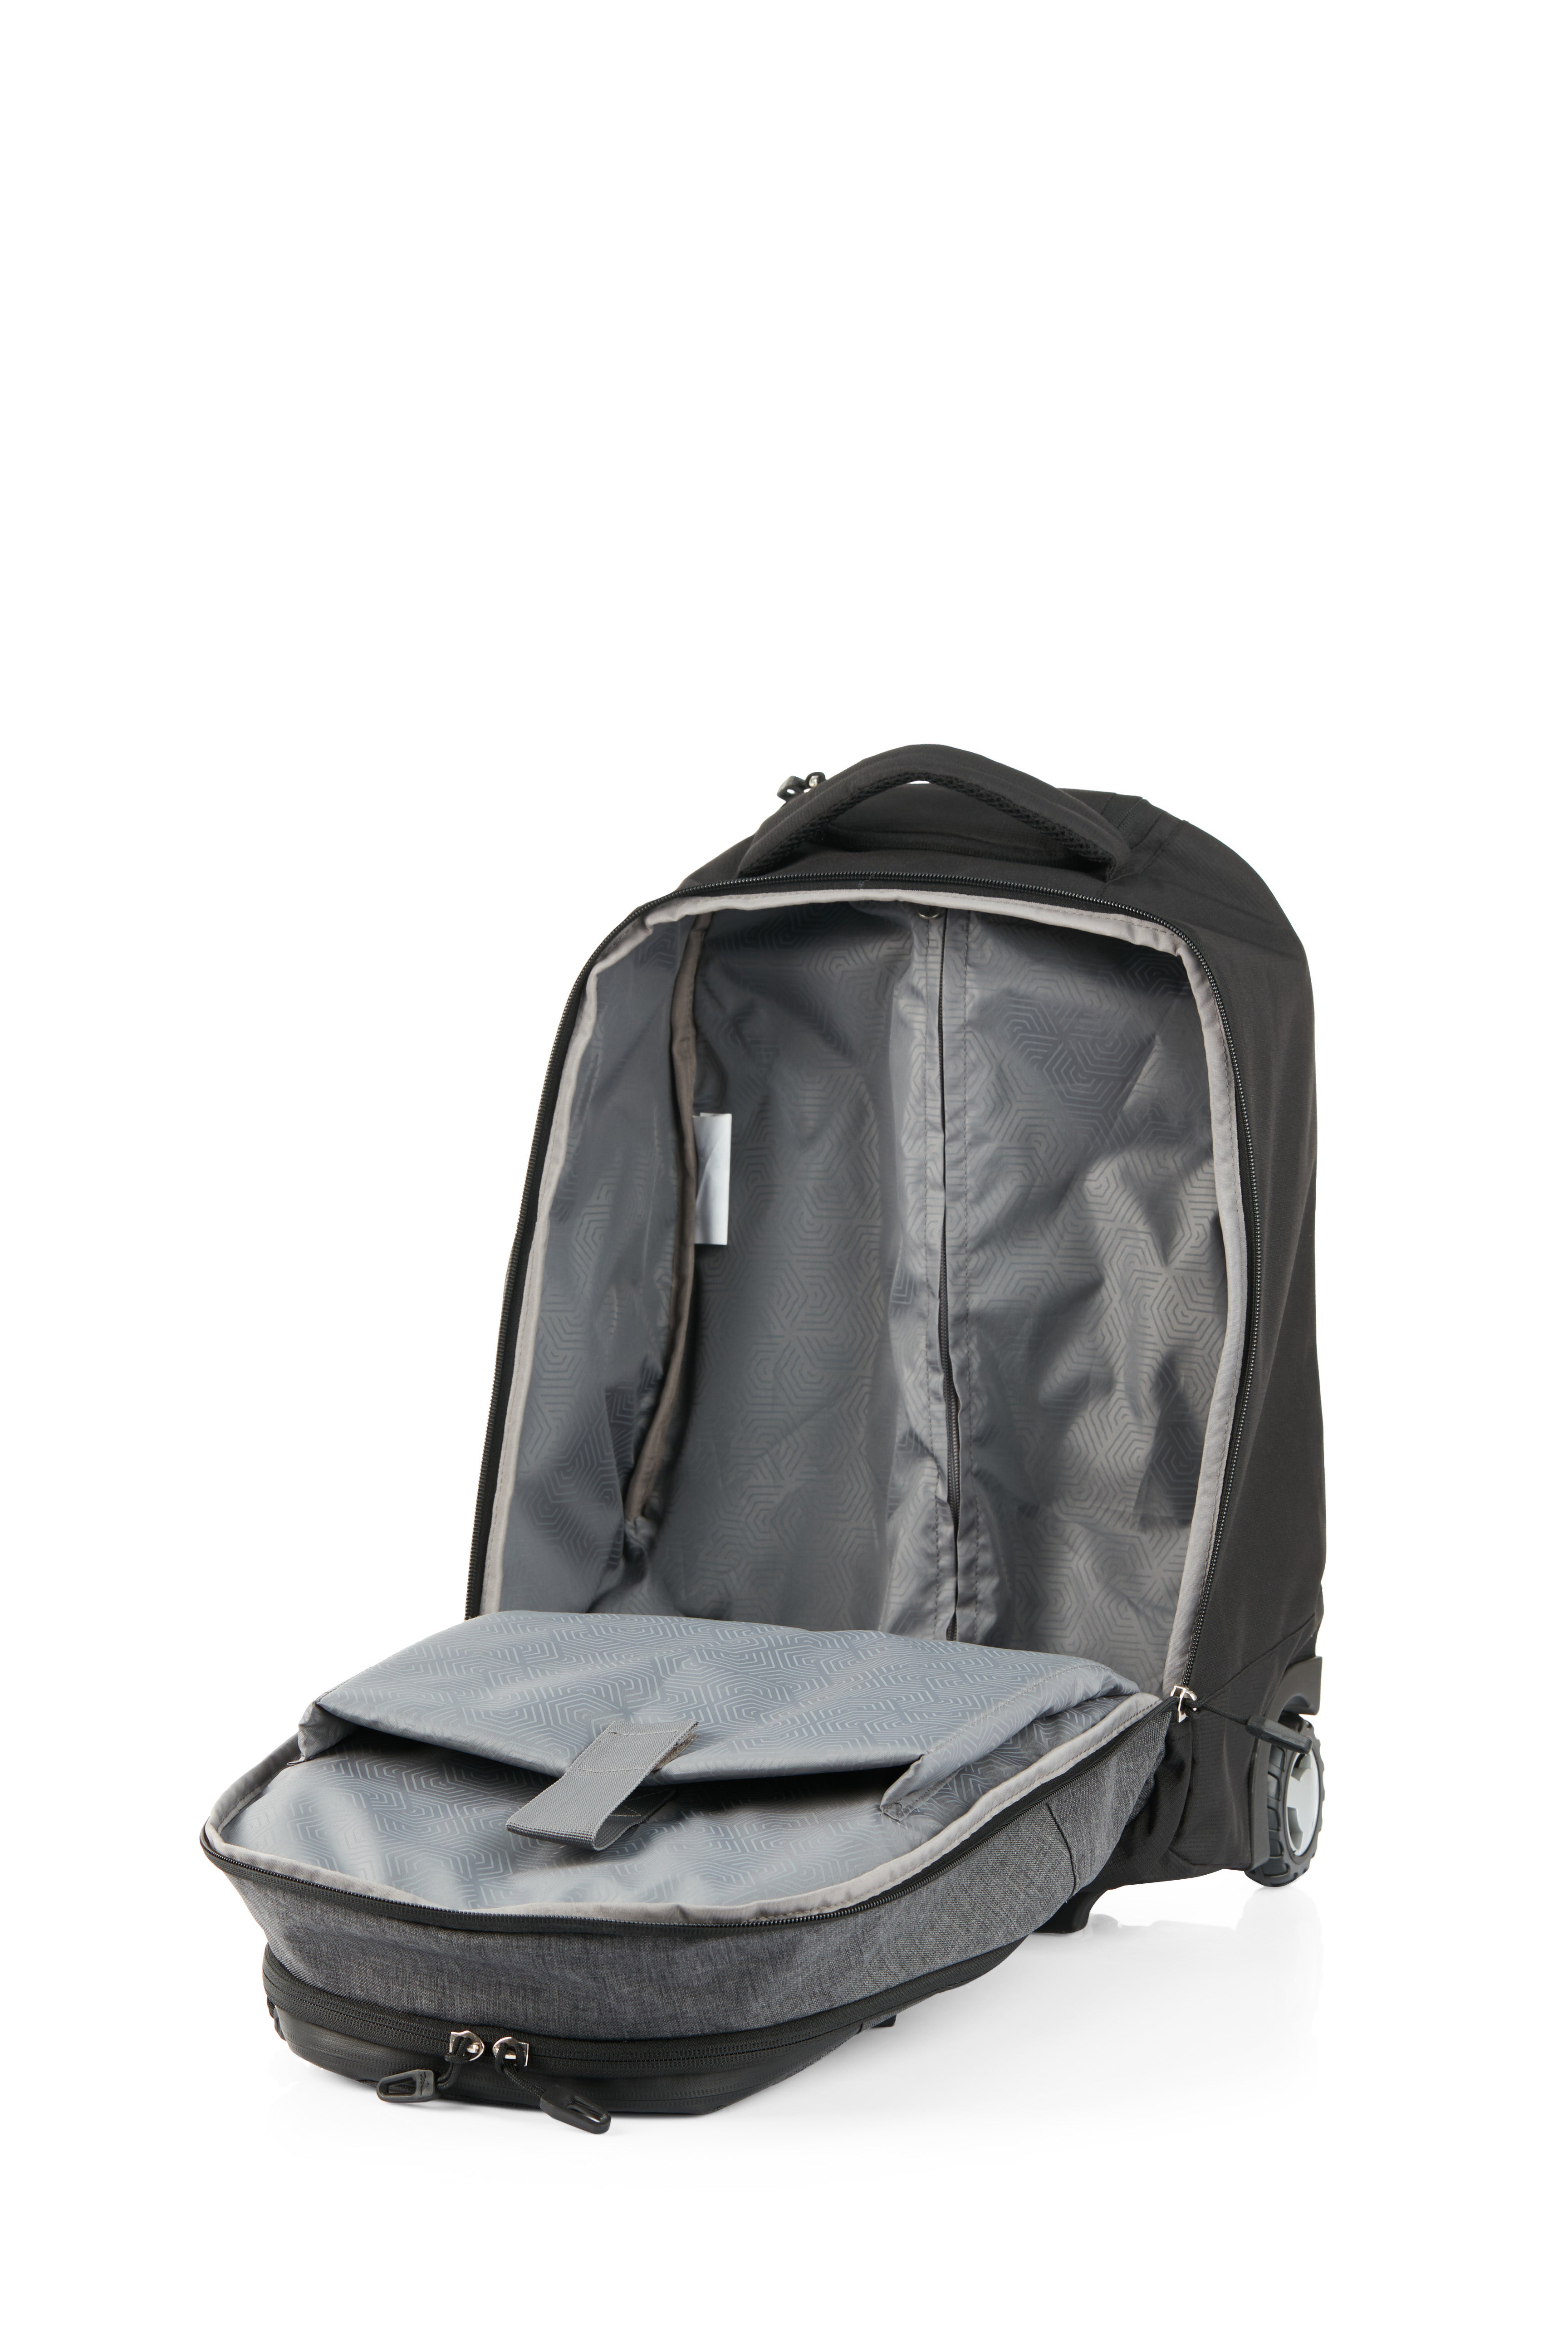 High Sierra - Jarvis Pro backpack on wheels - Black-9